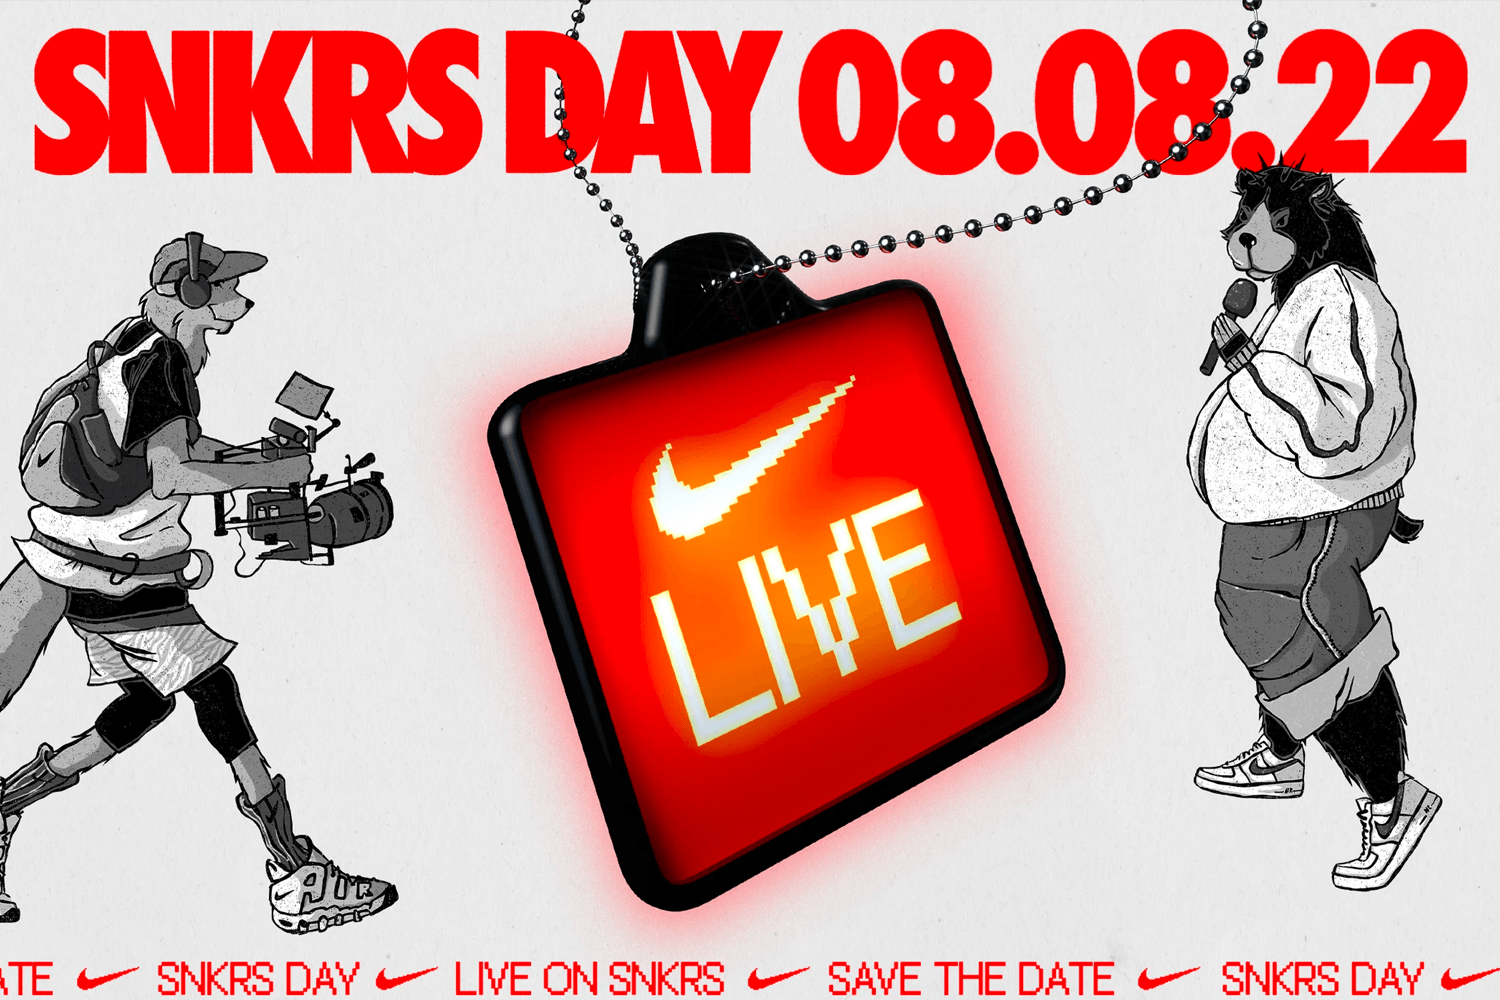 Der vierte Nike SNKRS Day Release wurde bekanntgegeben